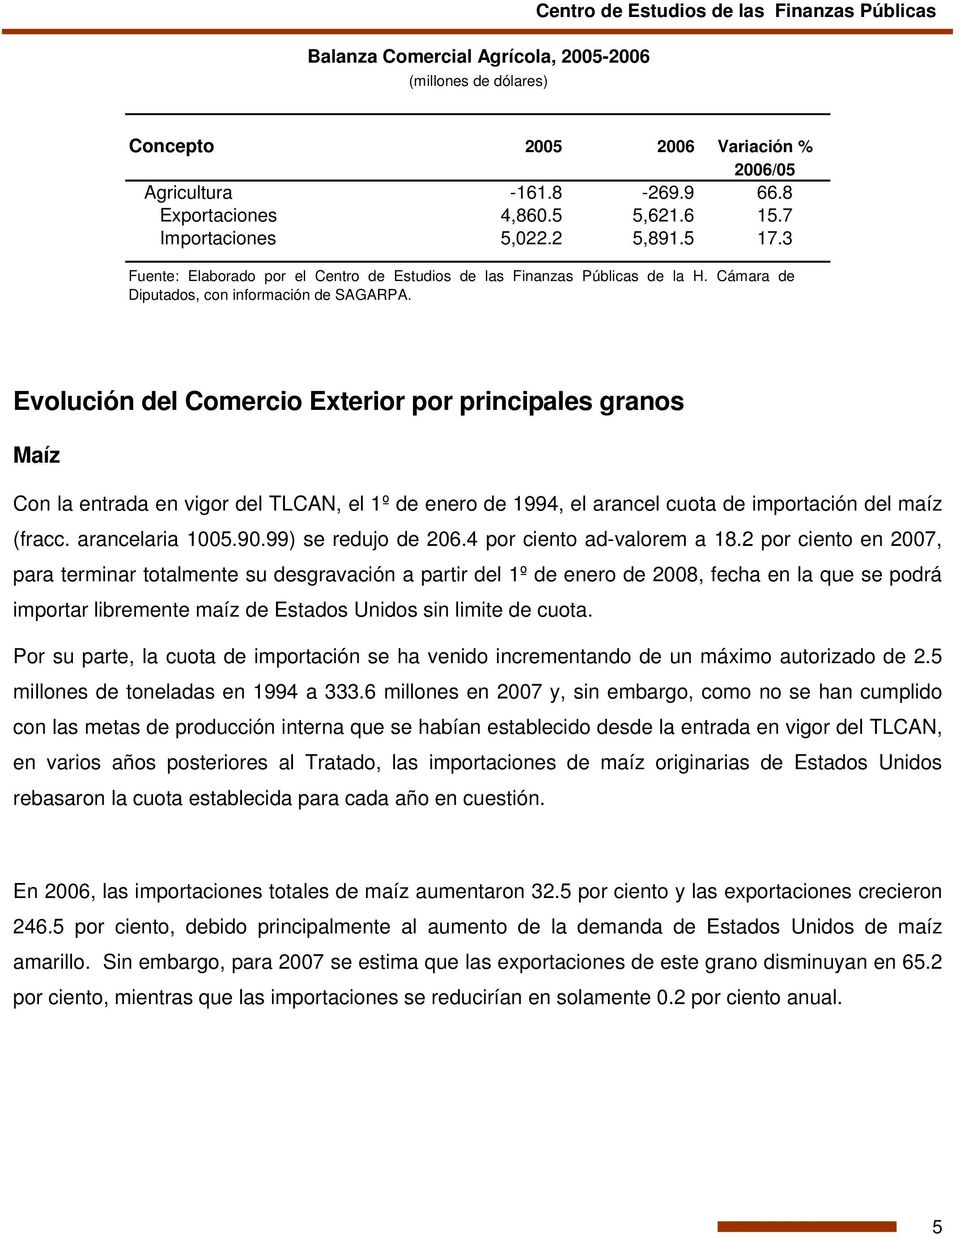 Evolución del Comercio Exterior por principales granos Maíz Con la entrada en vigor del TLCAN, el 1º de enero de 1994, el arancel cuota de importación del maíz (fracc. arancelaria 1005.90.